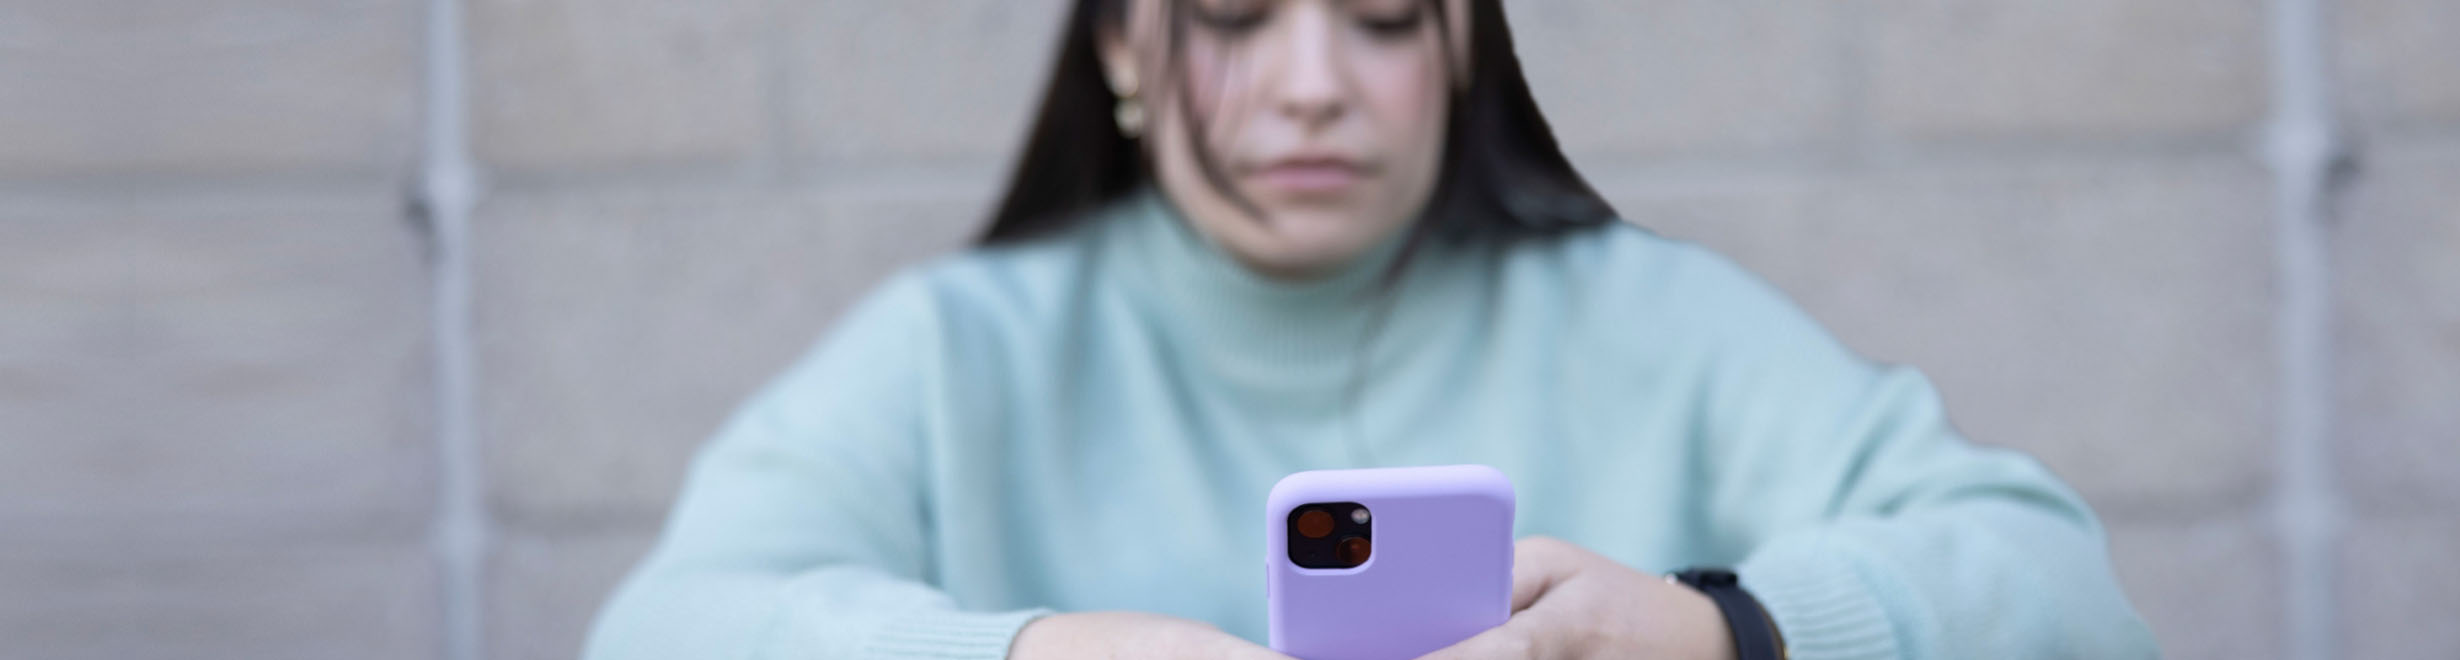 Jeune personne portant un gilet vert assise devant un mur de briques et utilisant le service de clavardage en direct sur un téléphone intelligent violet